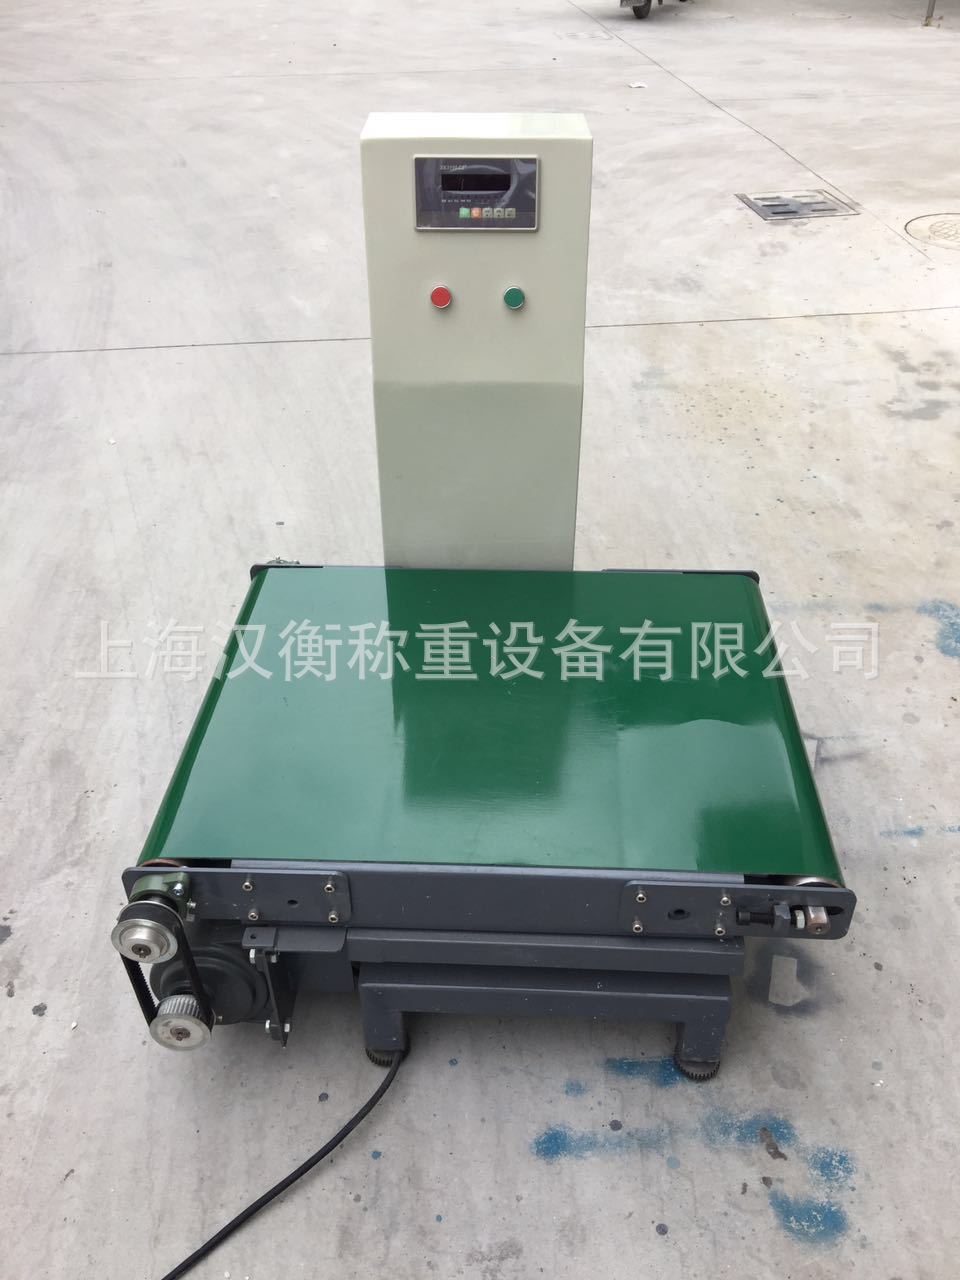 可连接PLC 对接系统传输数据检重滚筒秤厂家直销上海专业生产检重示例图2